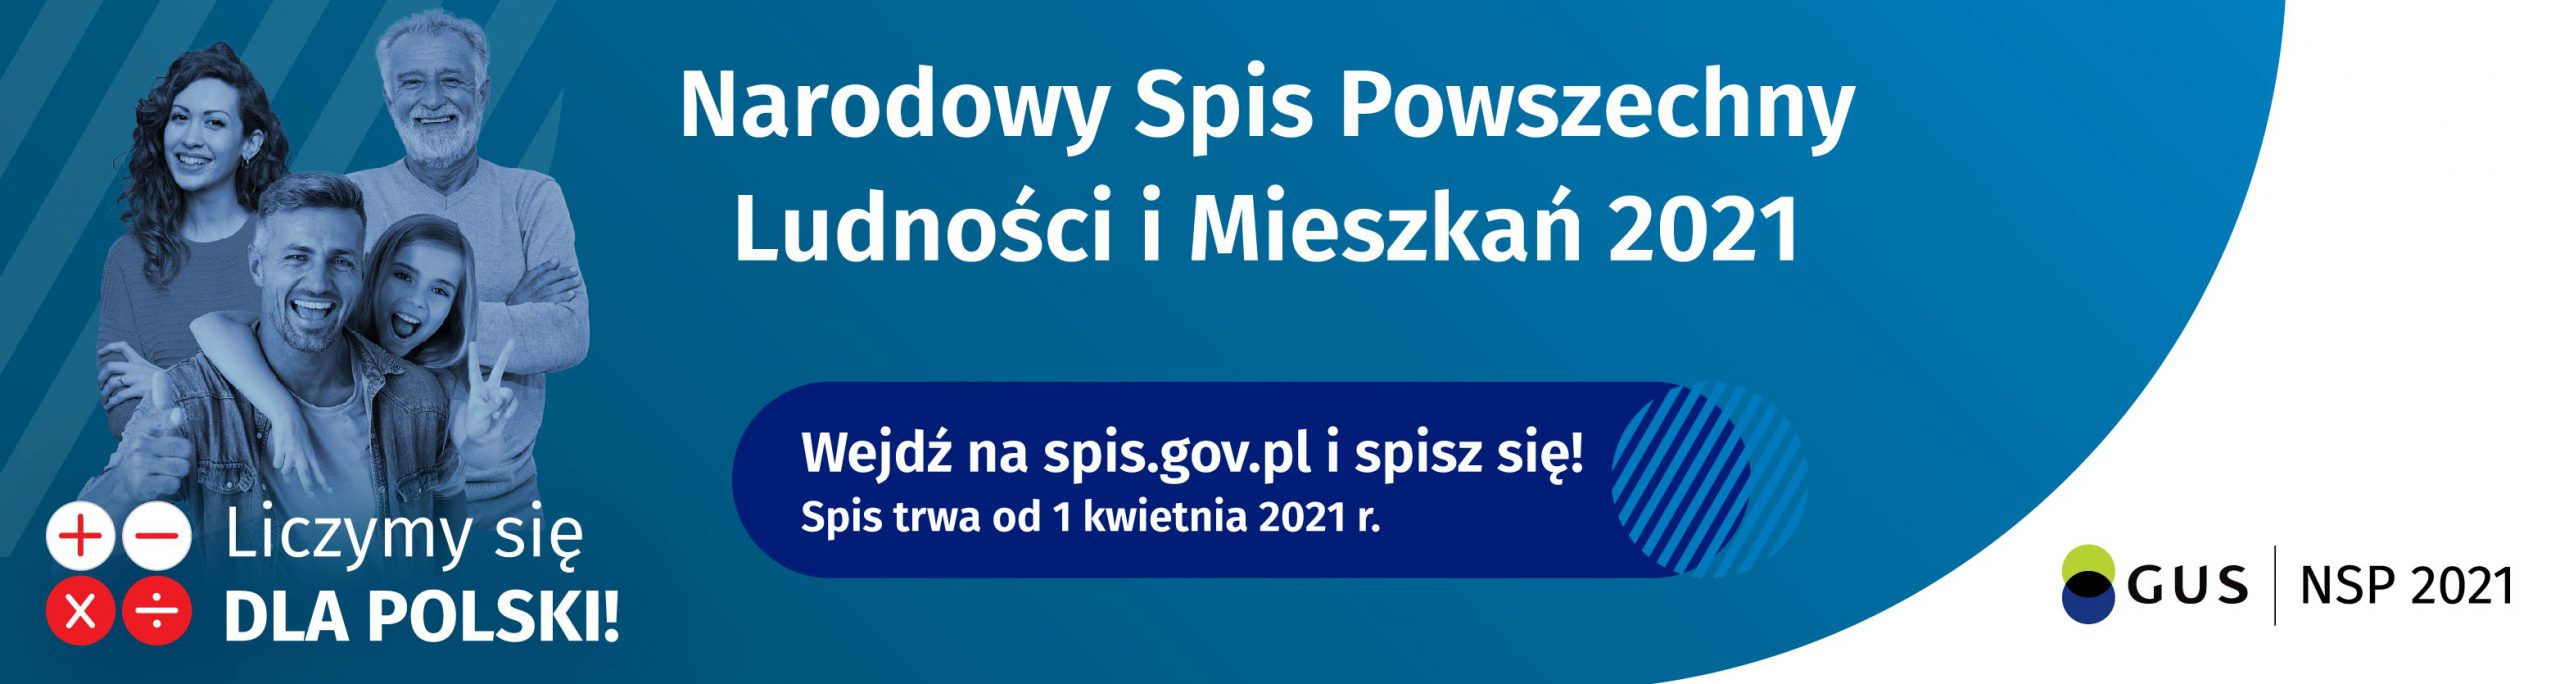 Narodowy Spis Powszechny Ludności i Mieszkań 2021. Wejdź na spis.gov.pl i spisz się! Spis trwa od 1 kwietnia do 30 września 2021 r.